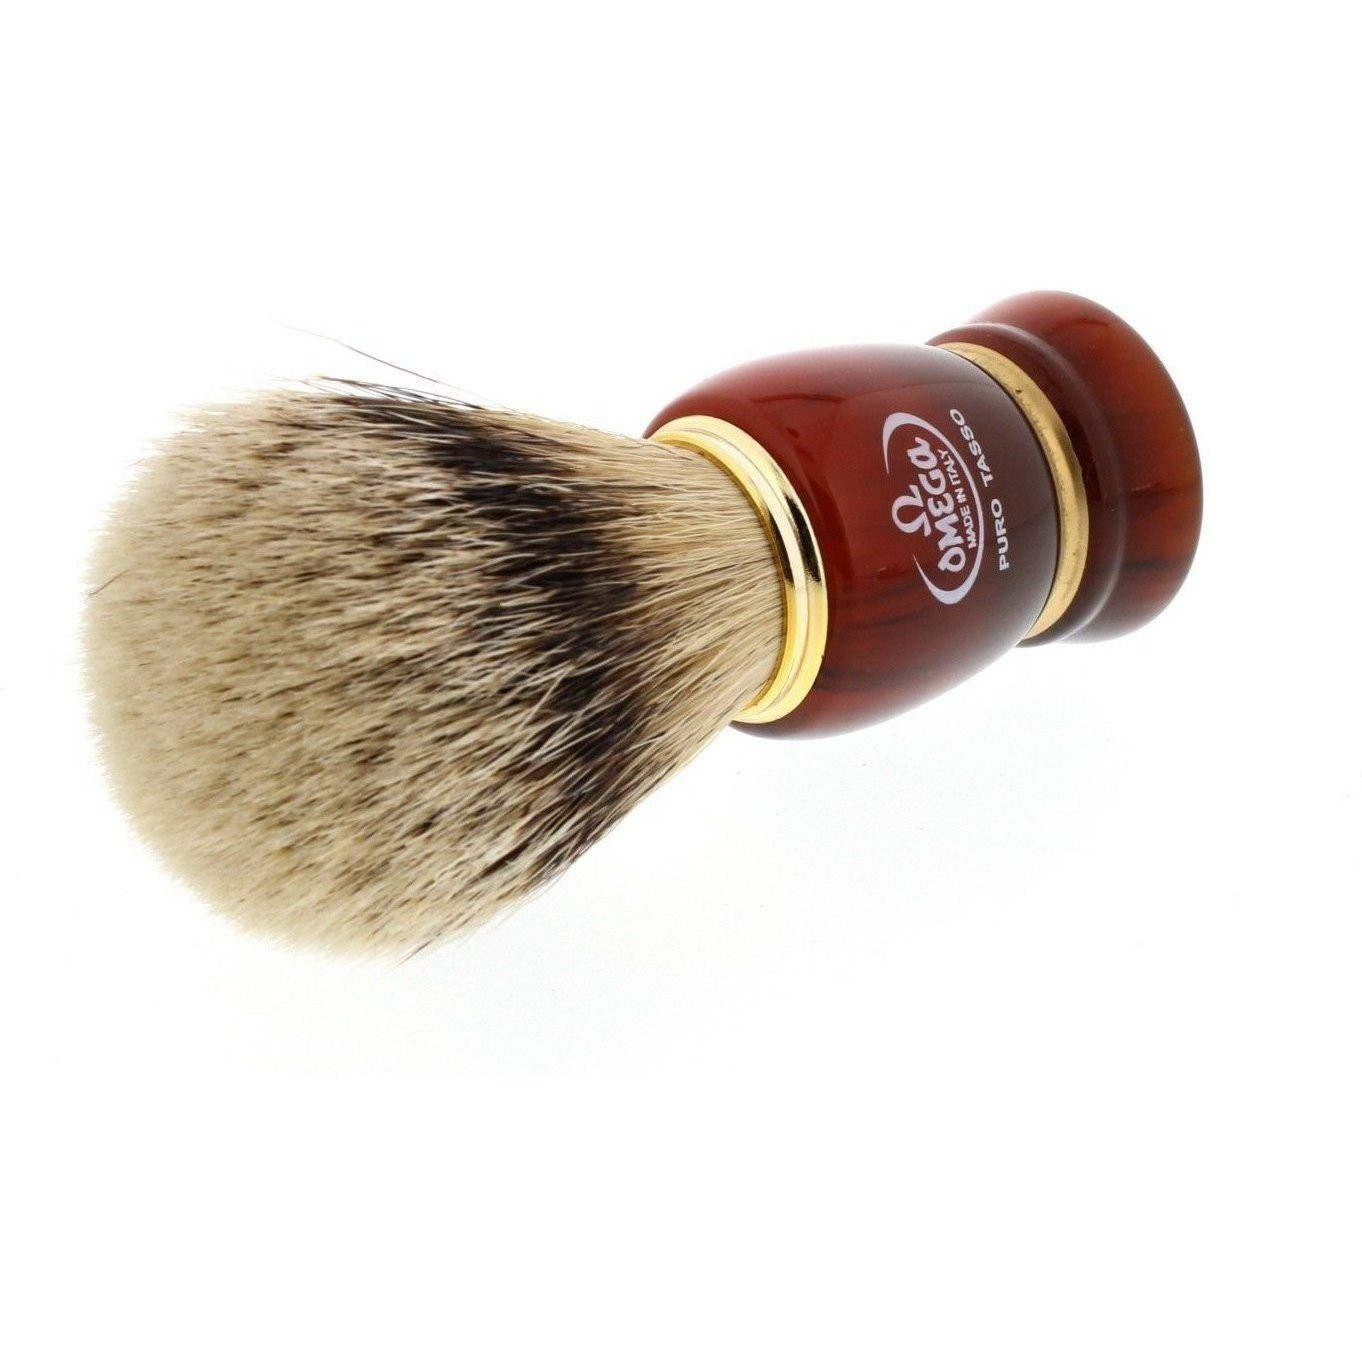 Product image 2 for Omega 637 Silvertip Badger Shaving Brush